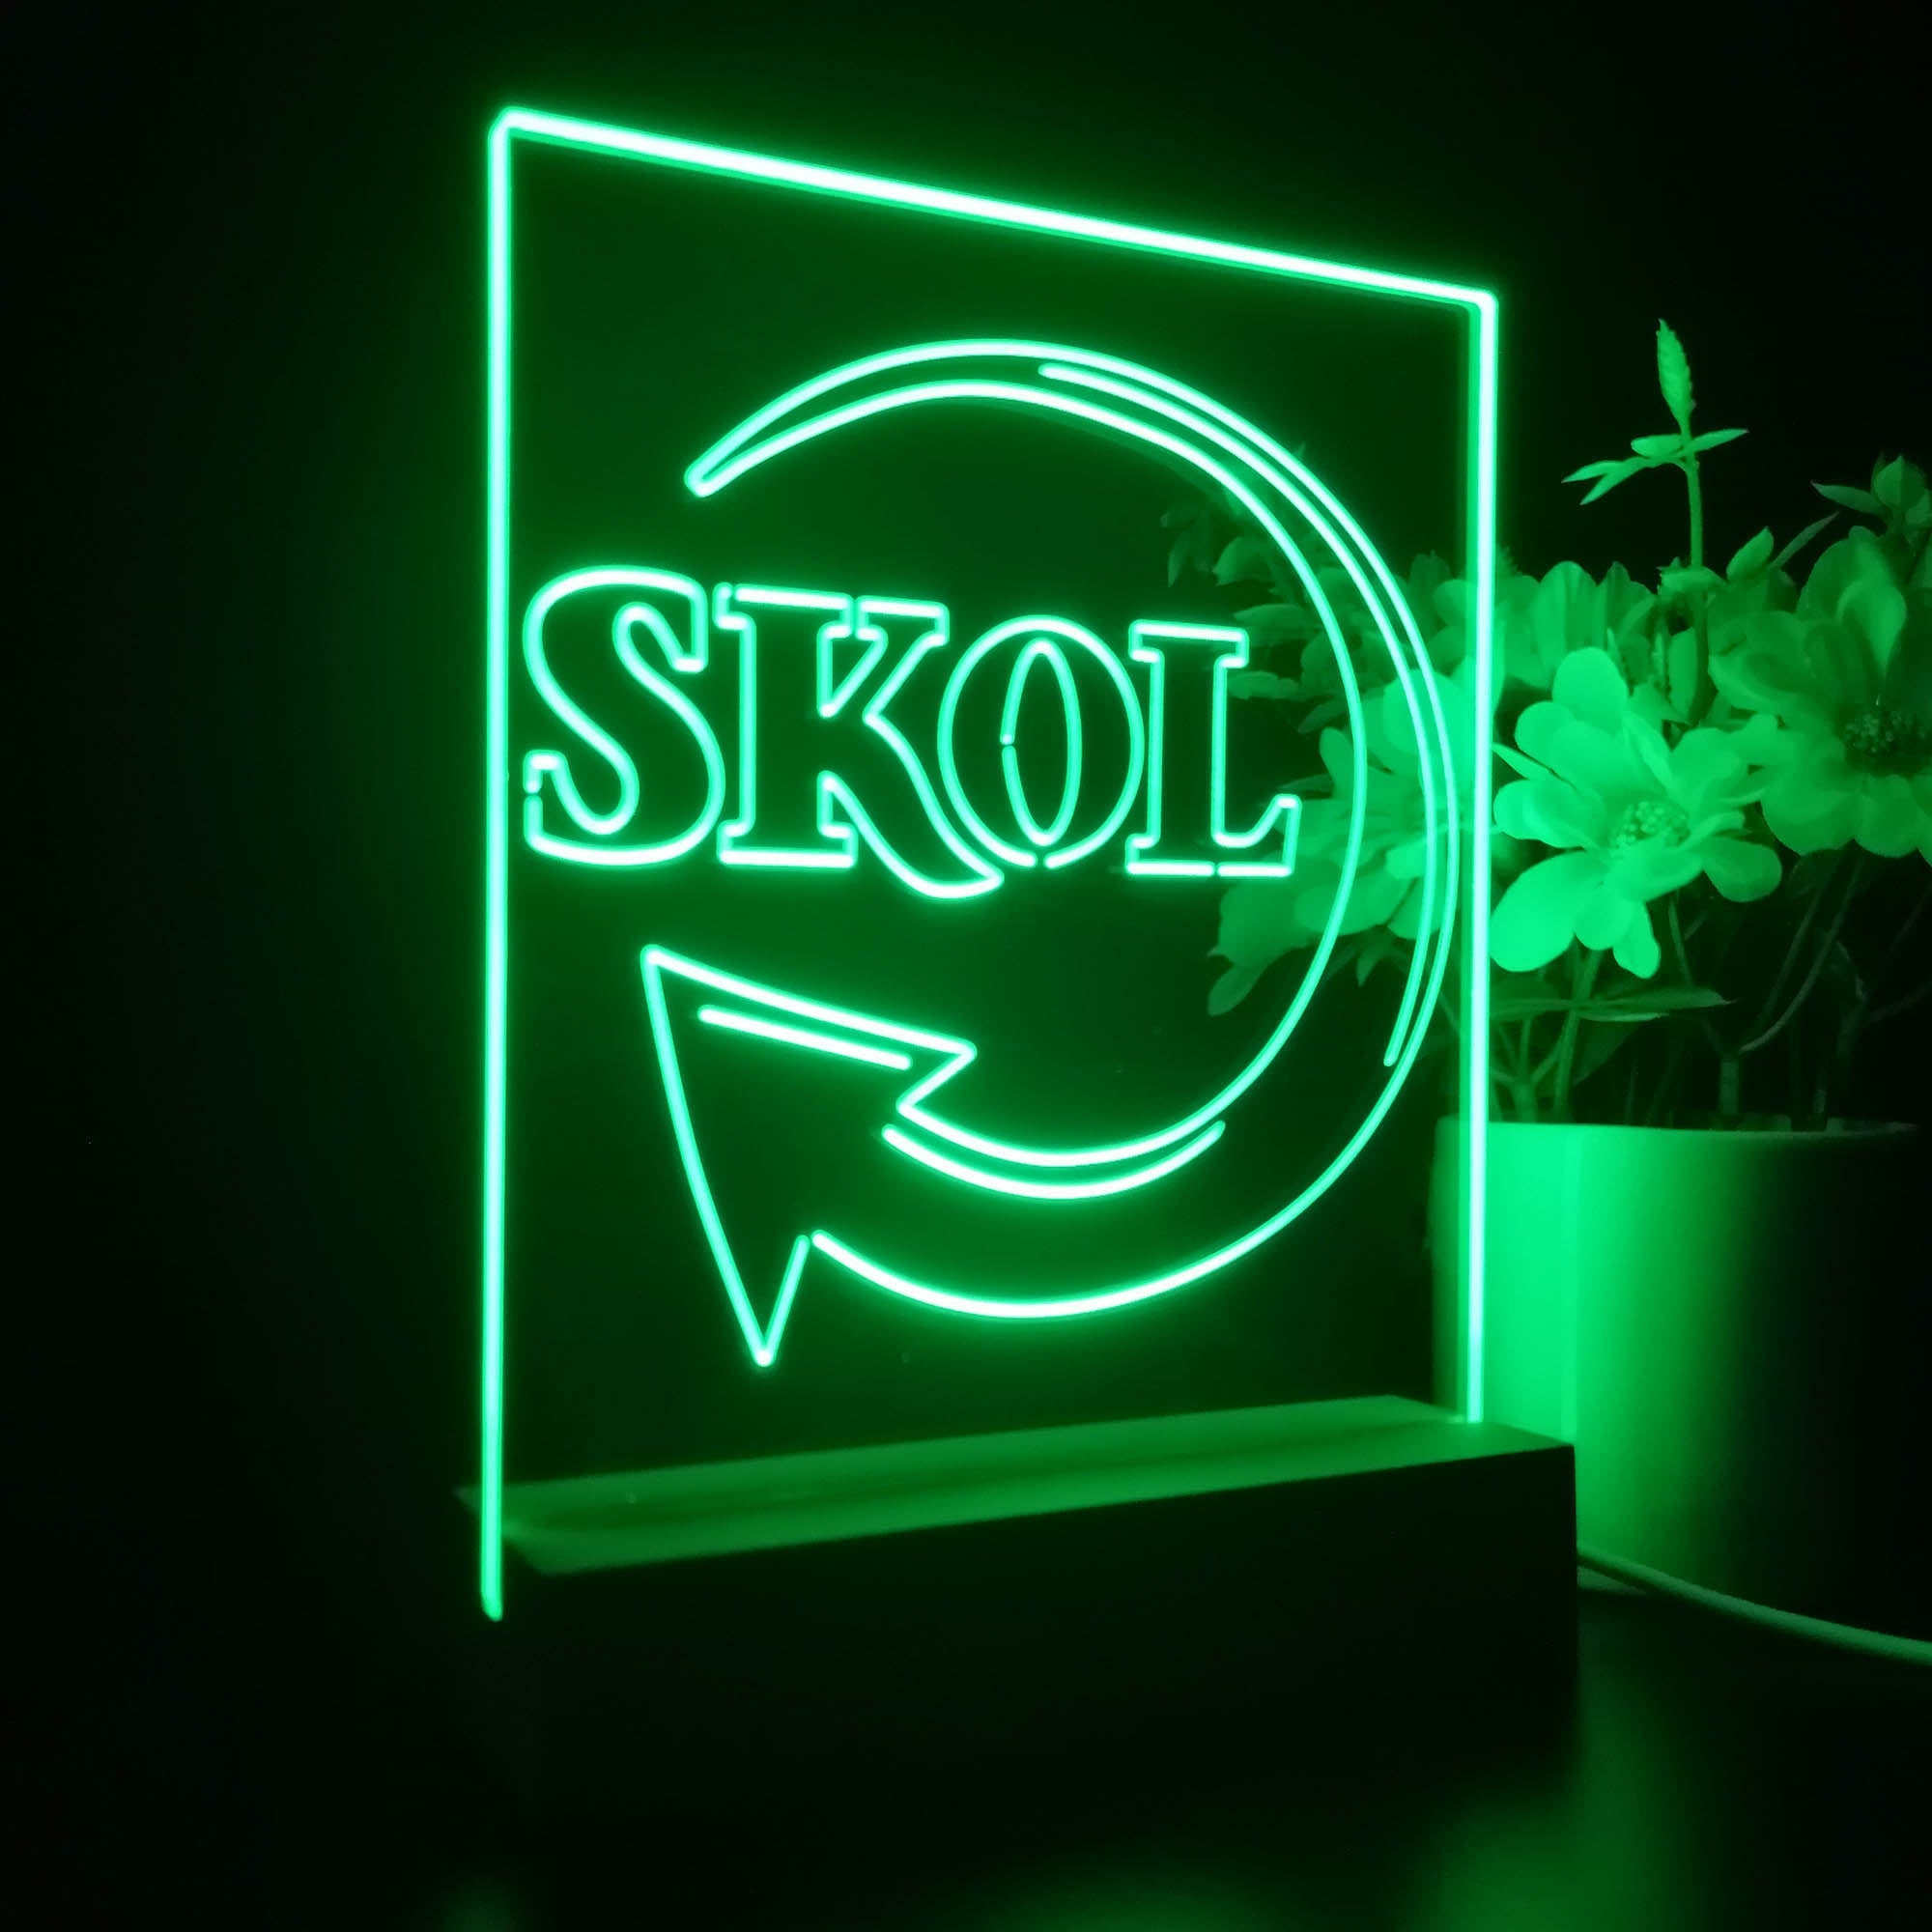 SKOL Bar 3D Illusion Night Light Desk Lamp